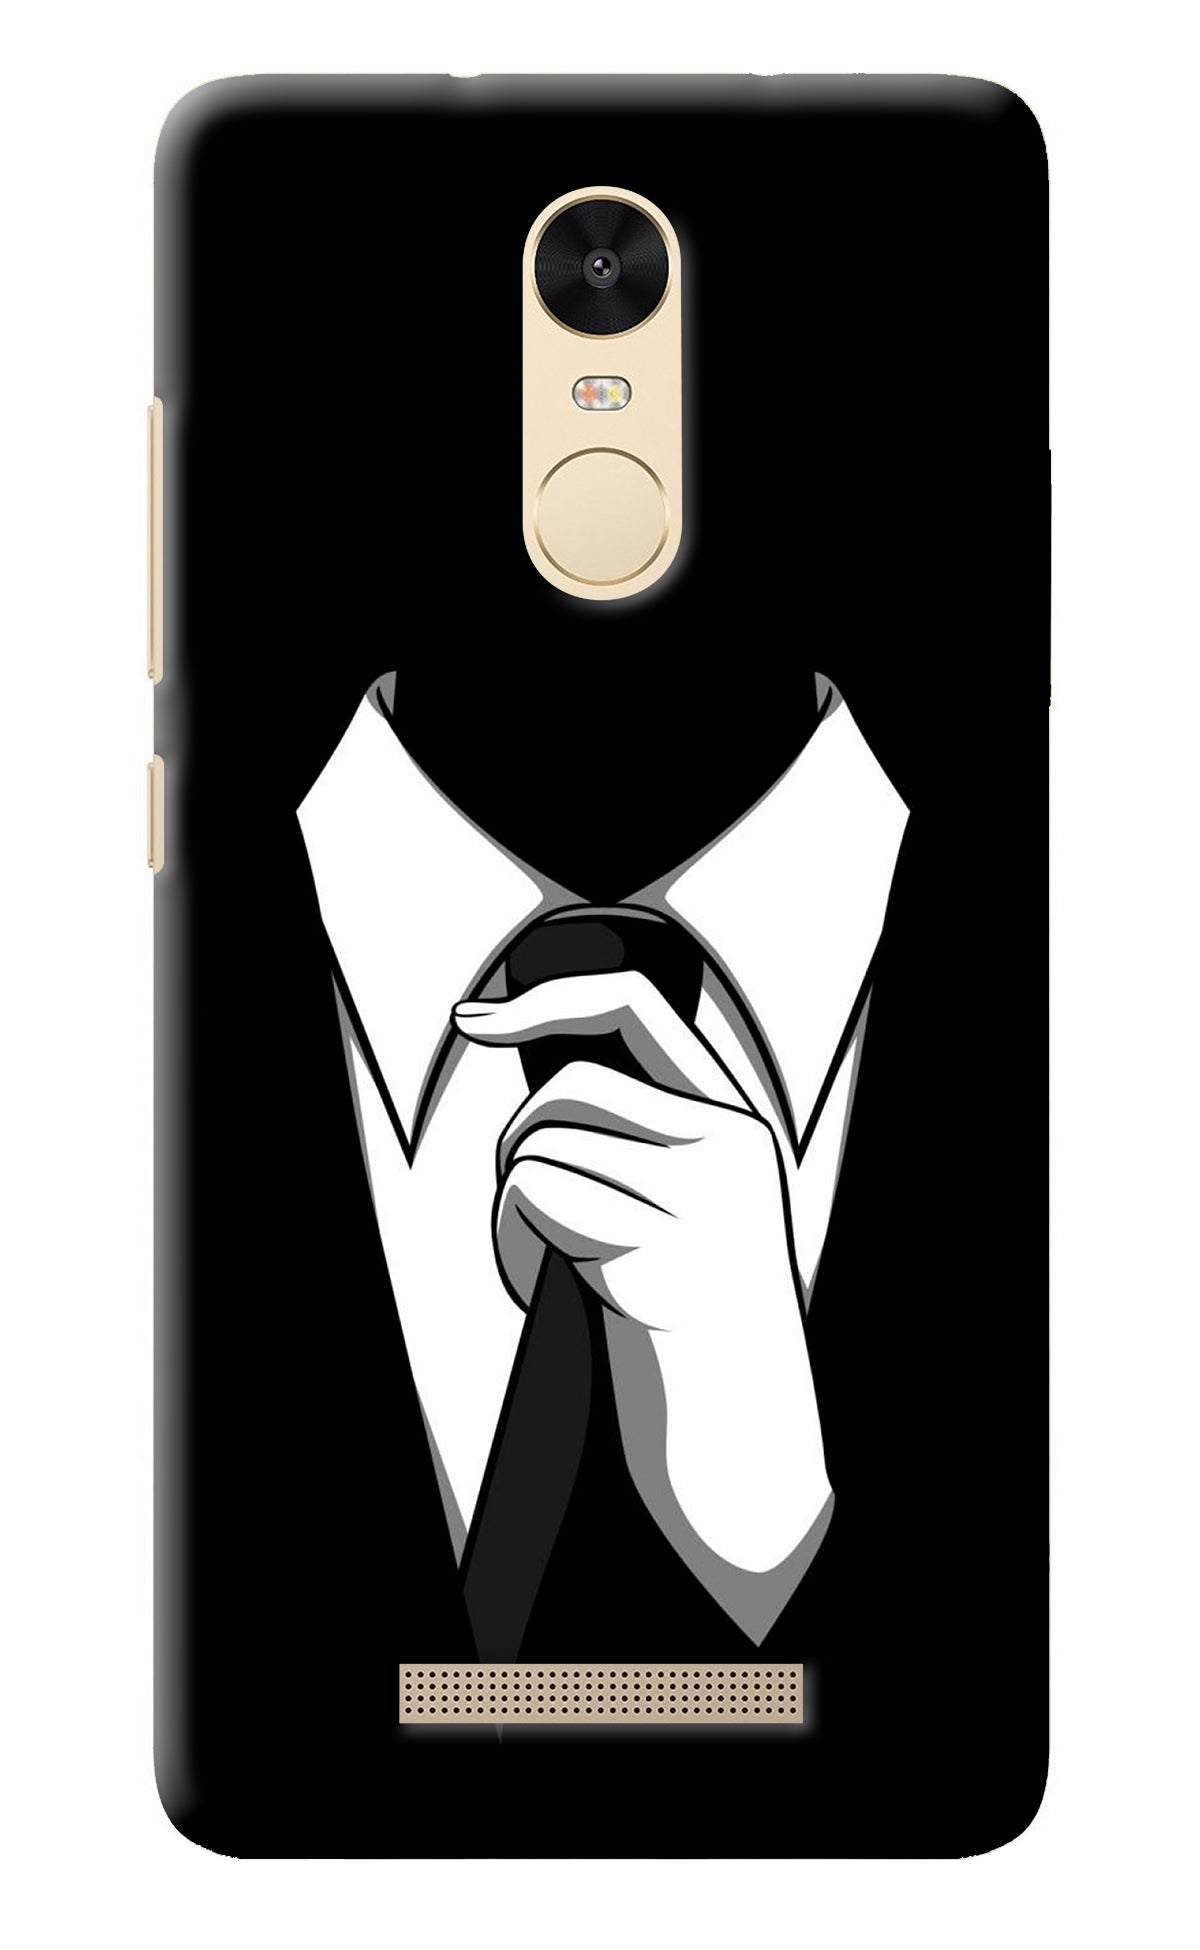 Black Tie Redmi Note 3 Back Cover